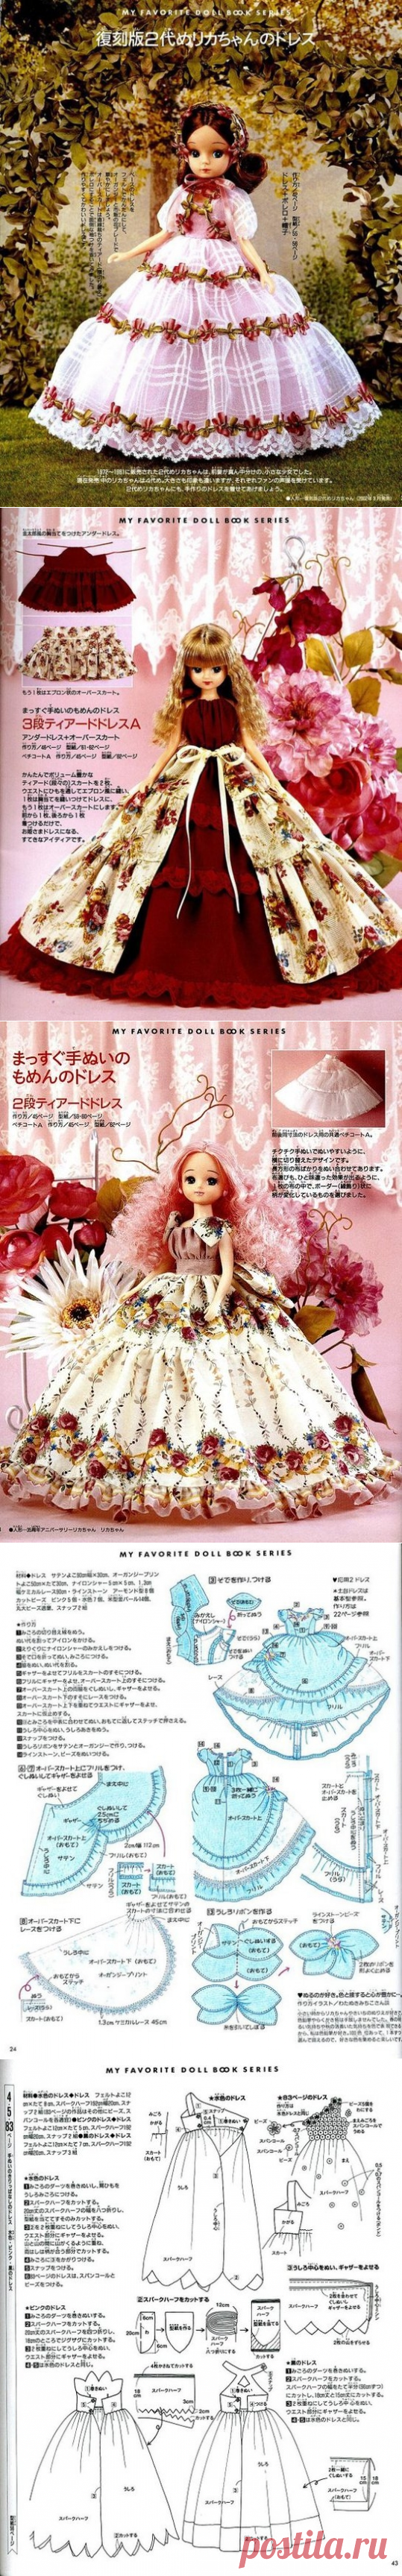 Безумно красивые платья для кукол.